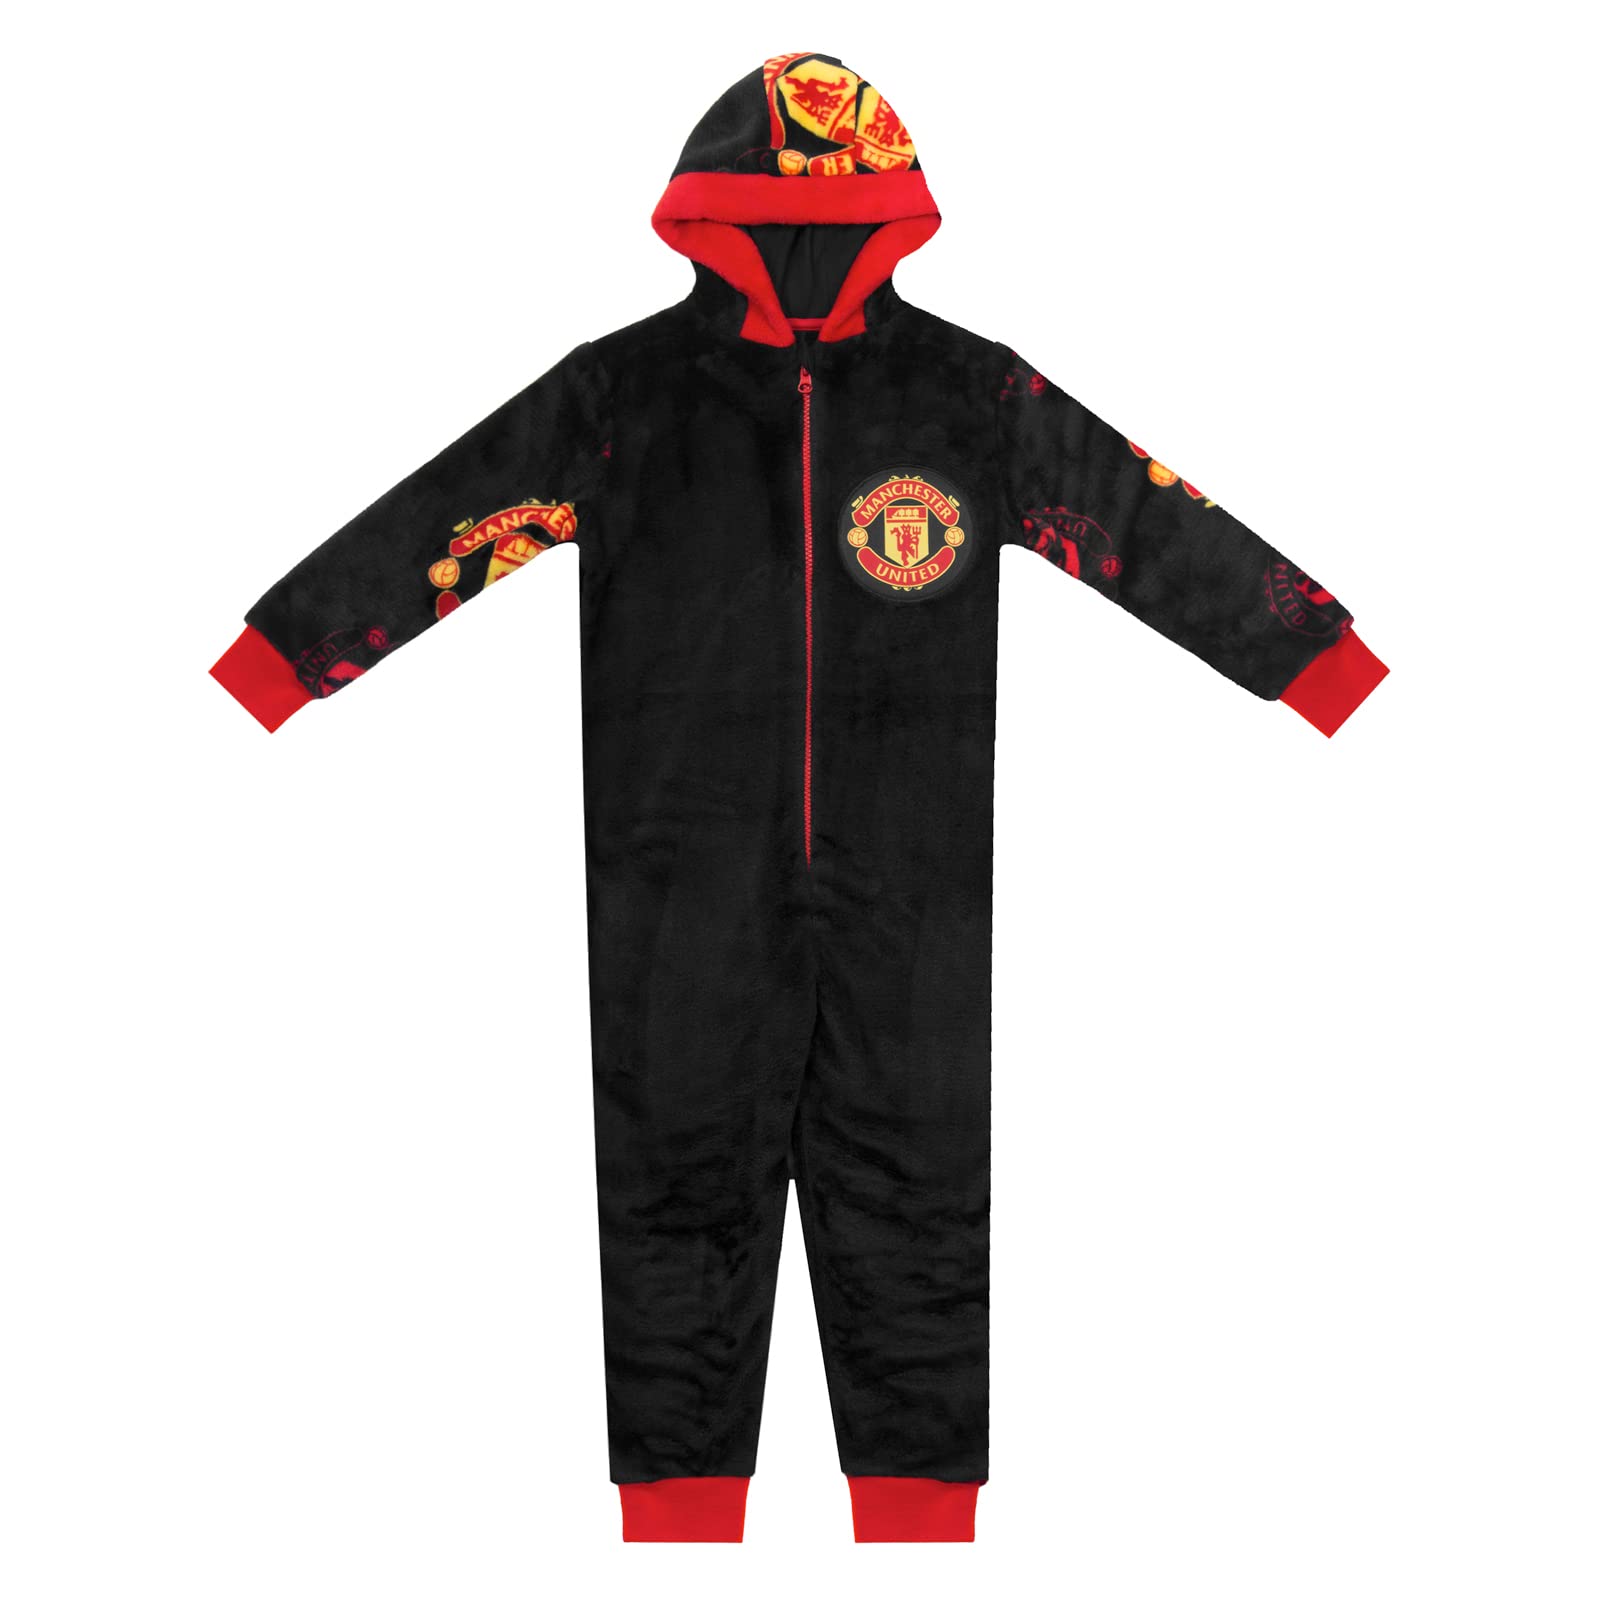 Manchester United FC - Jungen Schlafanzug-Einteiler aus Fleece - Offizielles Merchandise - Geschenk für Fußballfans - 12-13 Jahre